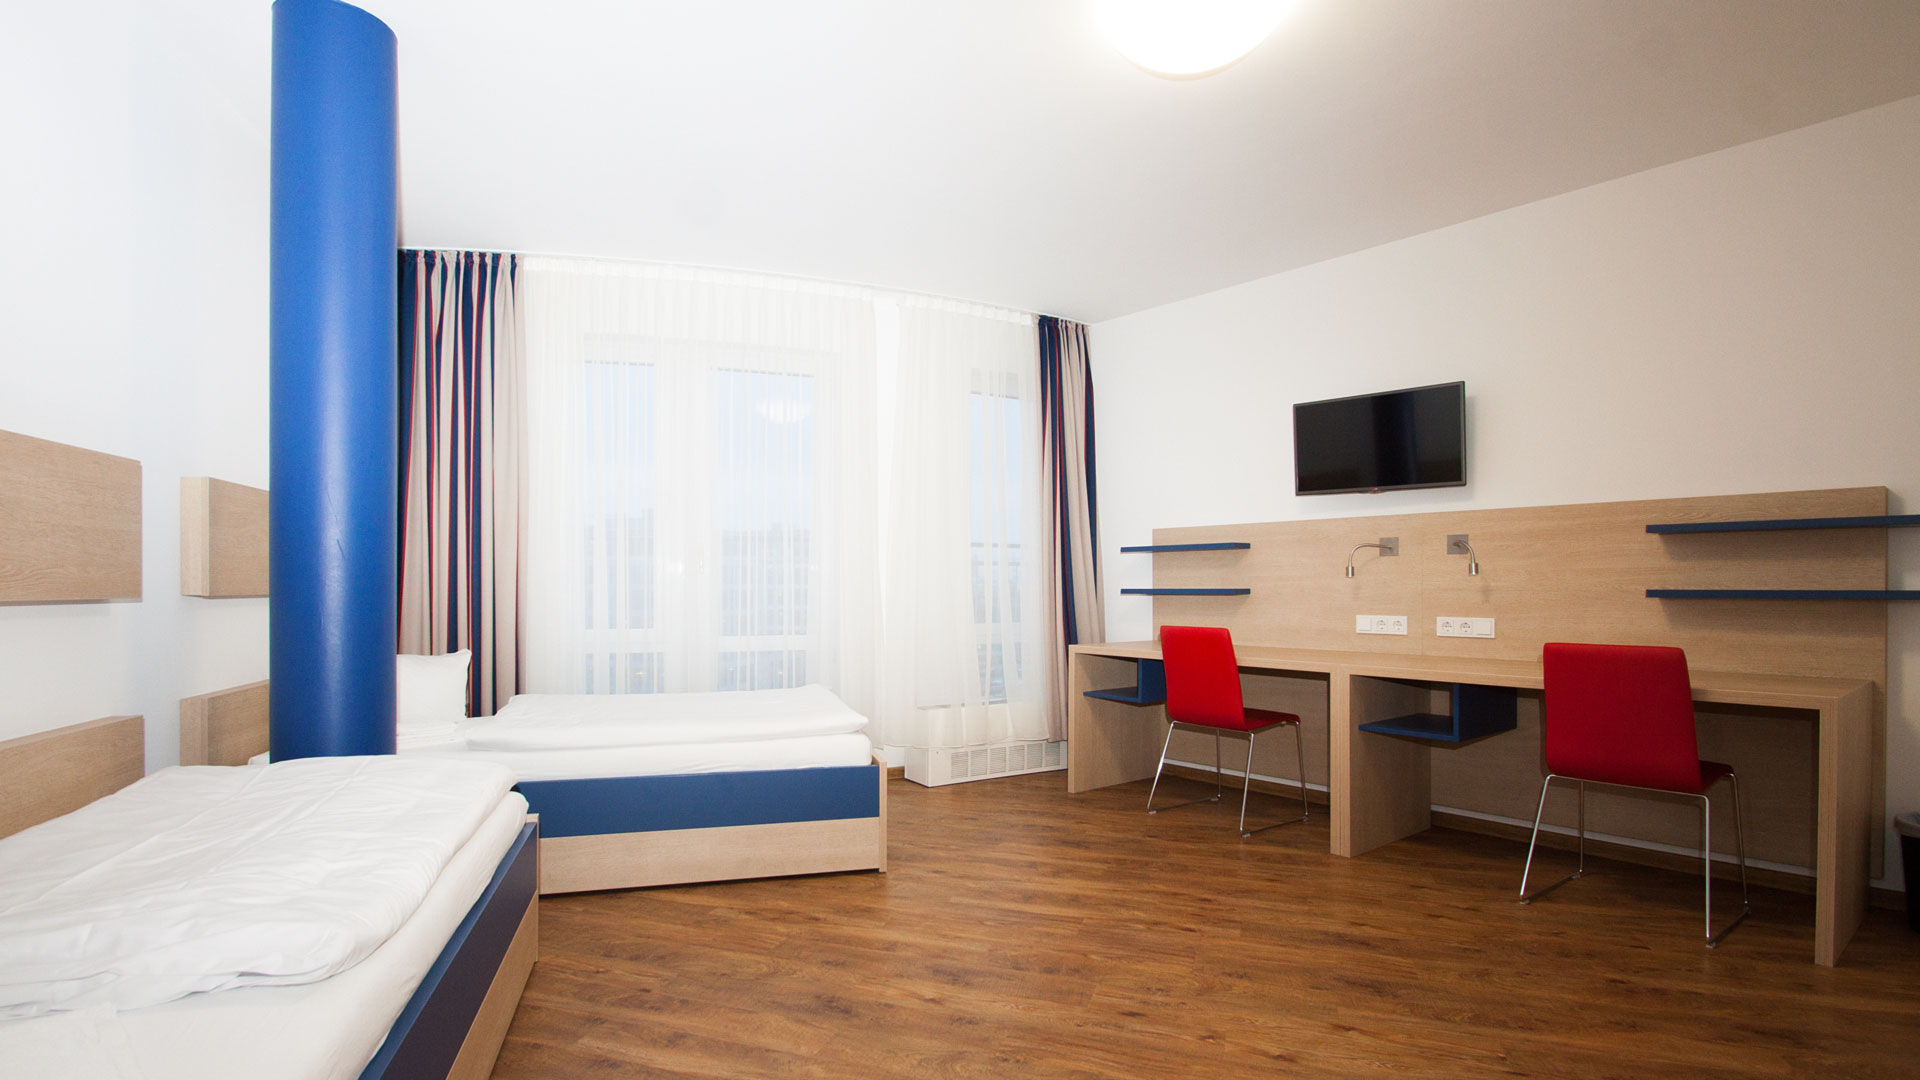 Una camera doppia nella residenza per gli ospiti a Berlino (sono disponibili stanze per gli allergici)